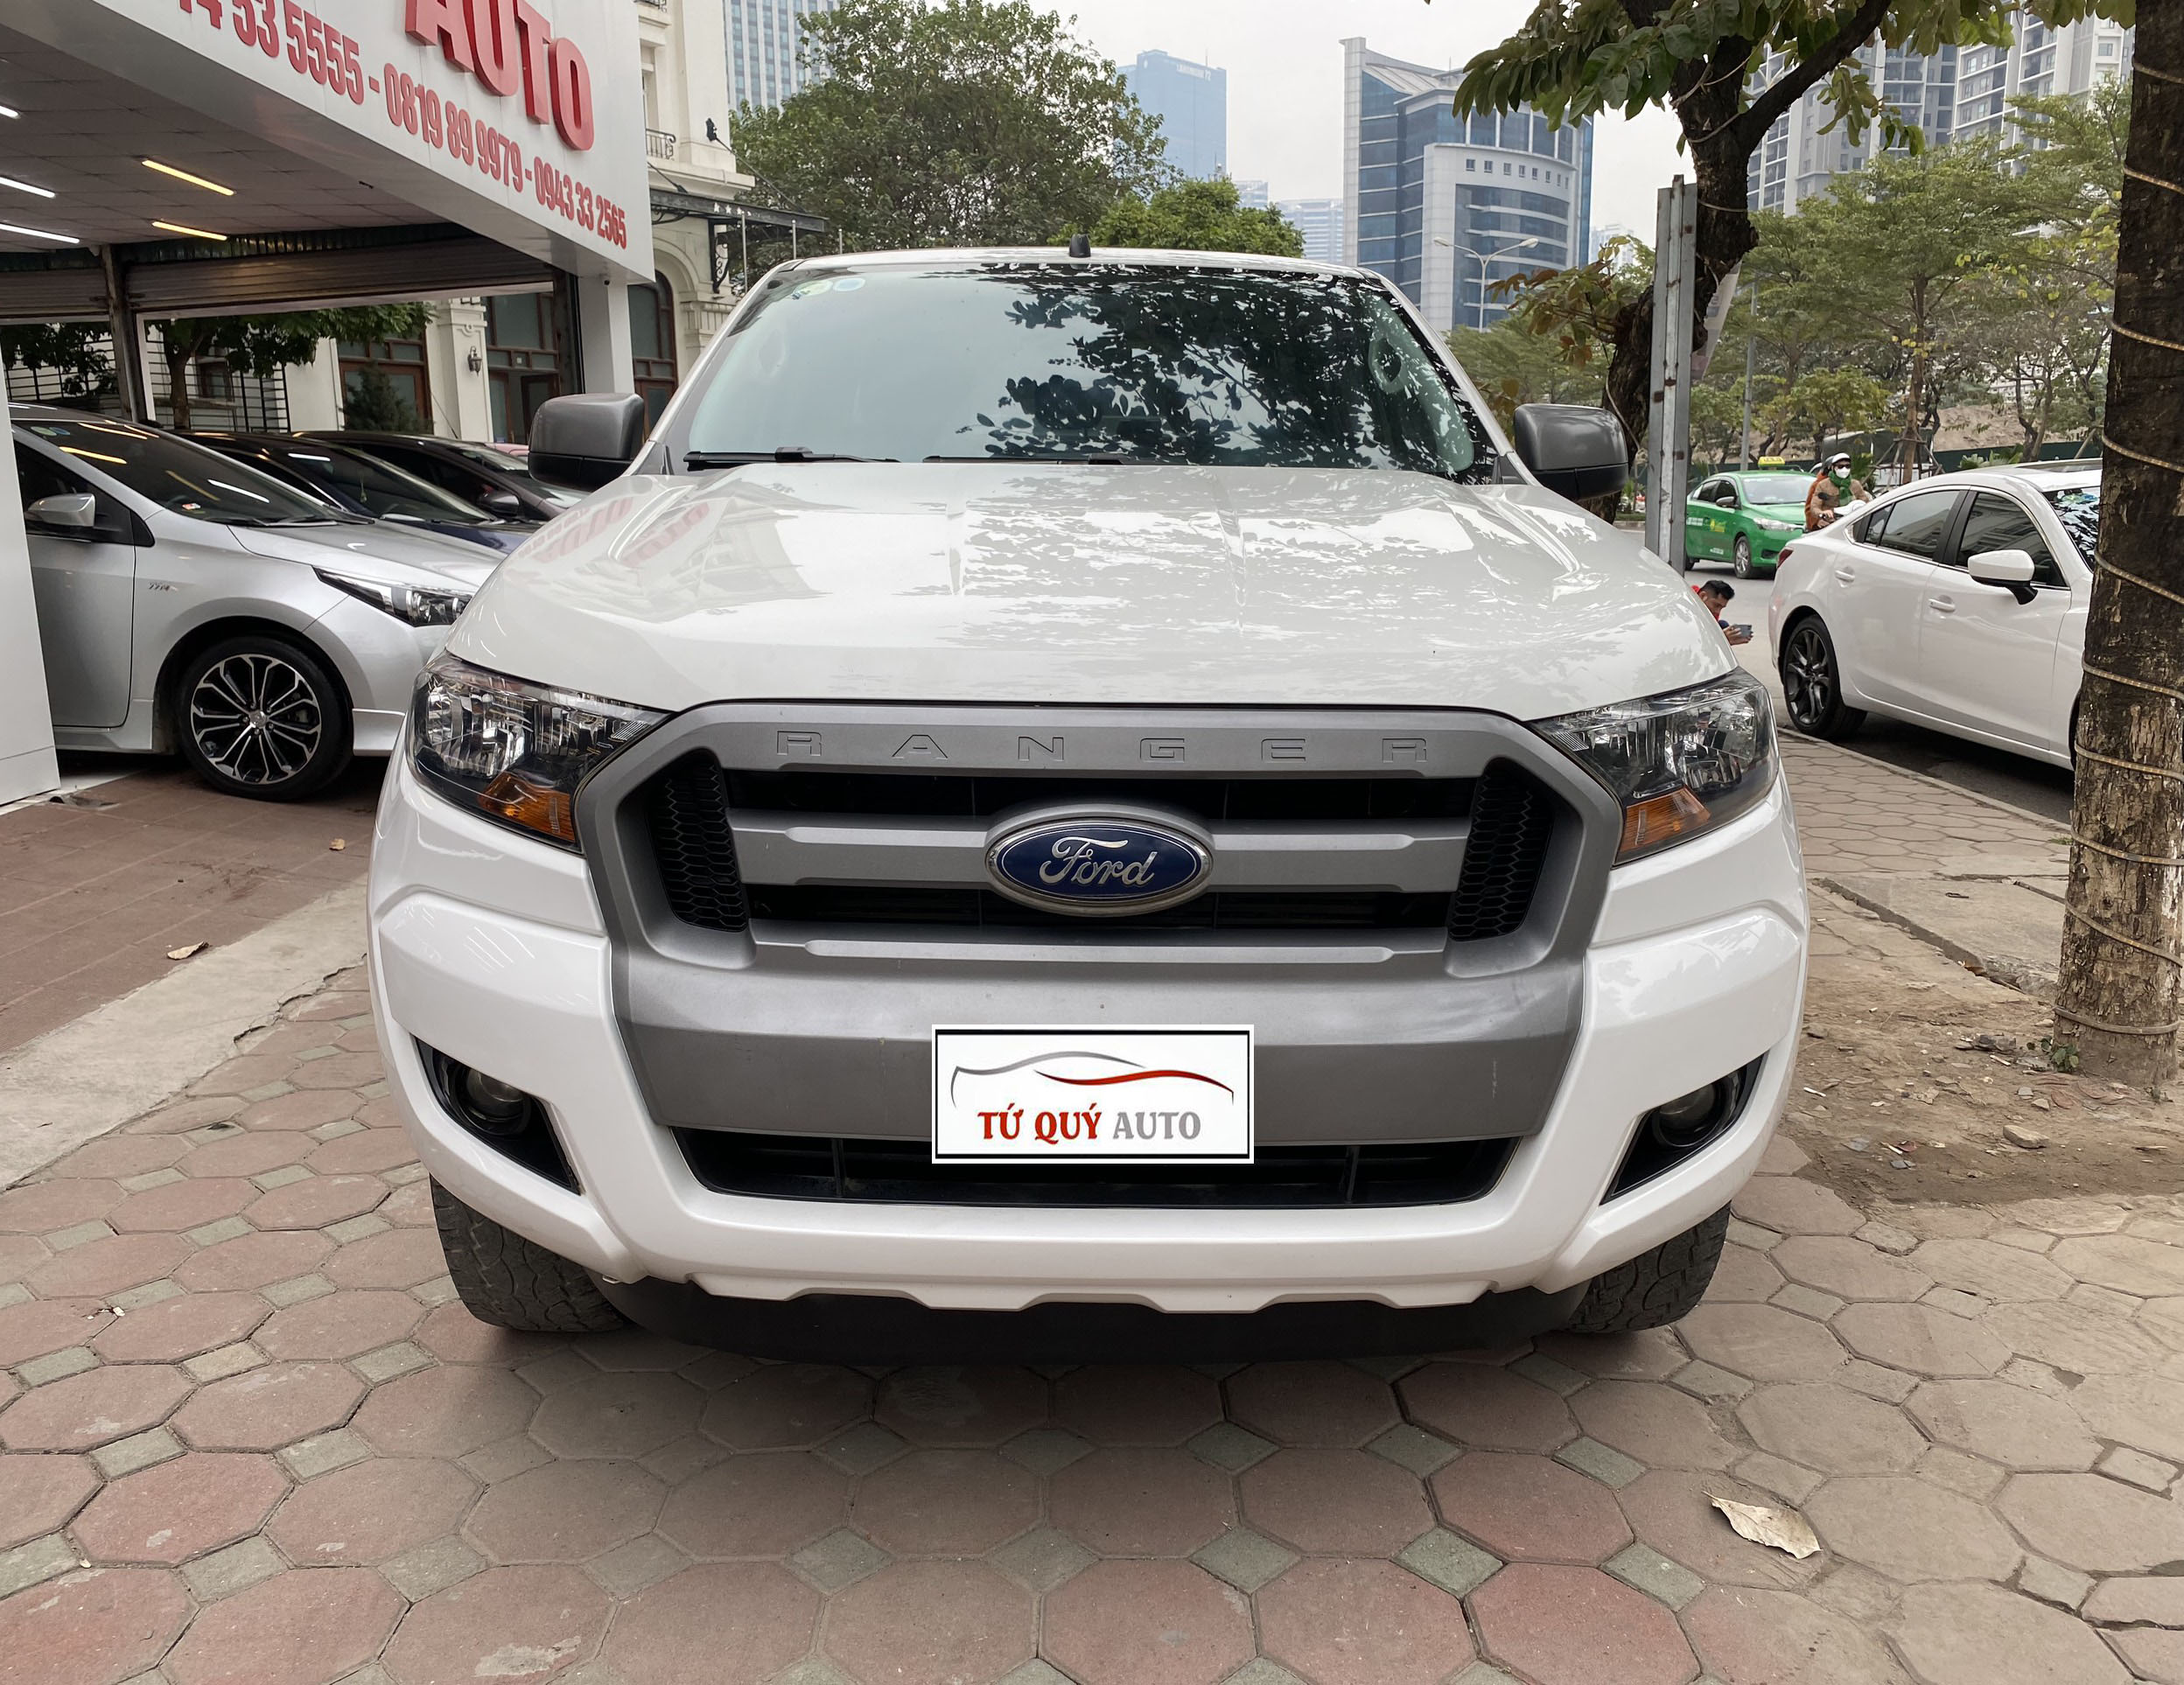 Ford Ranger 22 XLS 2017 Số sàn máy dầu   Hà Nội  Giá 475 triệu   0913536483  Xe Hơi Việt  Chợ Mua Bán Xe Ô Tô Xe Máy Xe Tải Xe Khách  Online